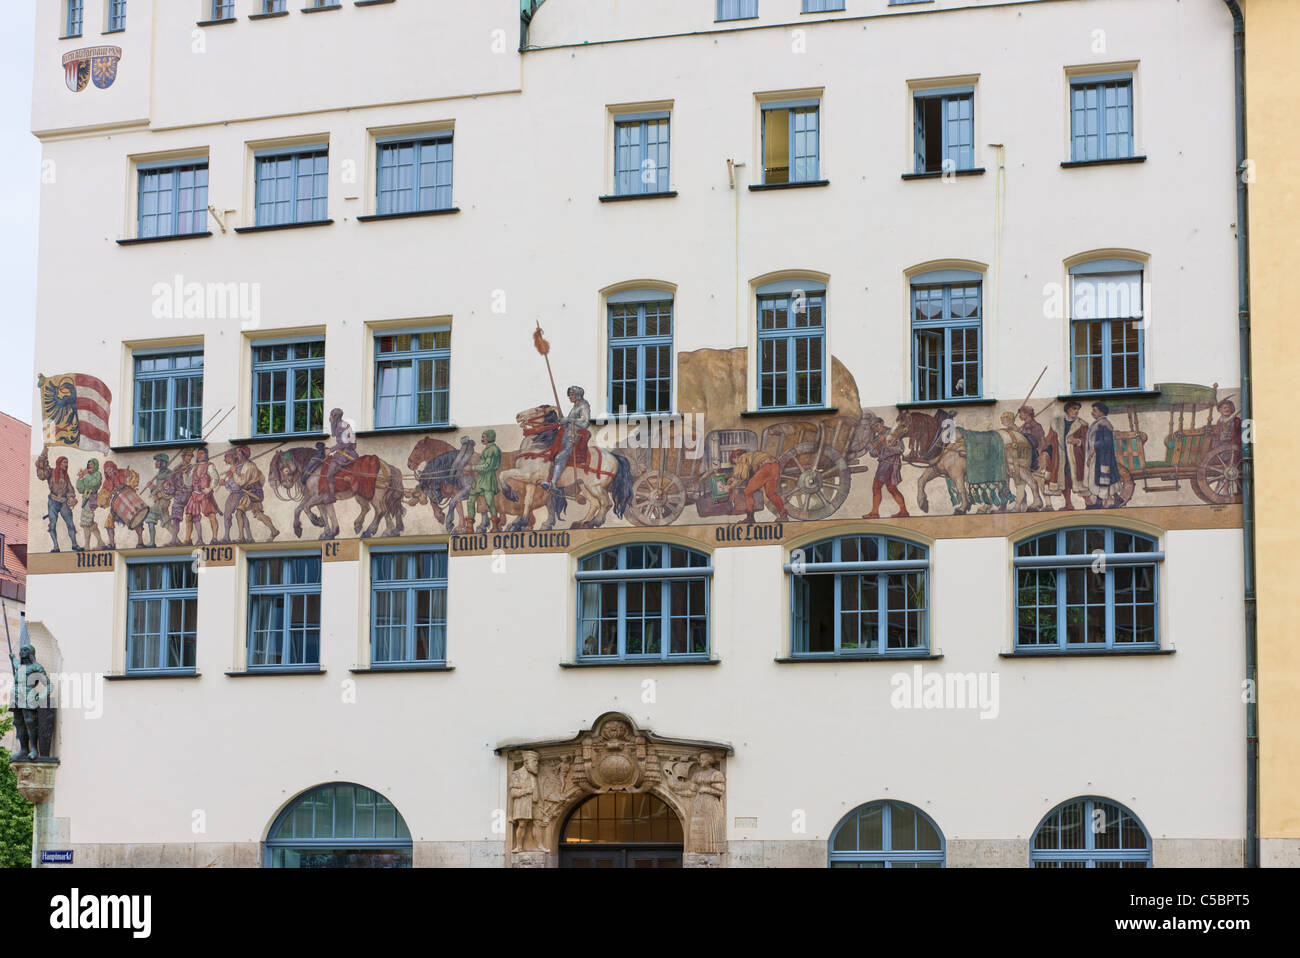 Hauptmarkt, casa con el mural mostrando los avances comerciales de la ciudad en la edad media. El texto es "comercio de Nuremberg pasa a través de todas las tierras". Foto de stock